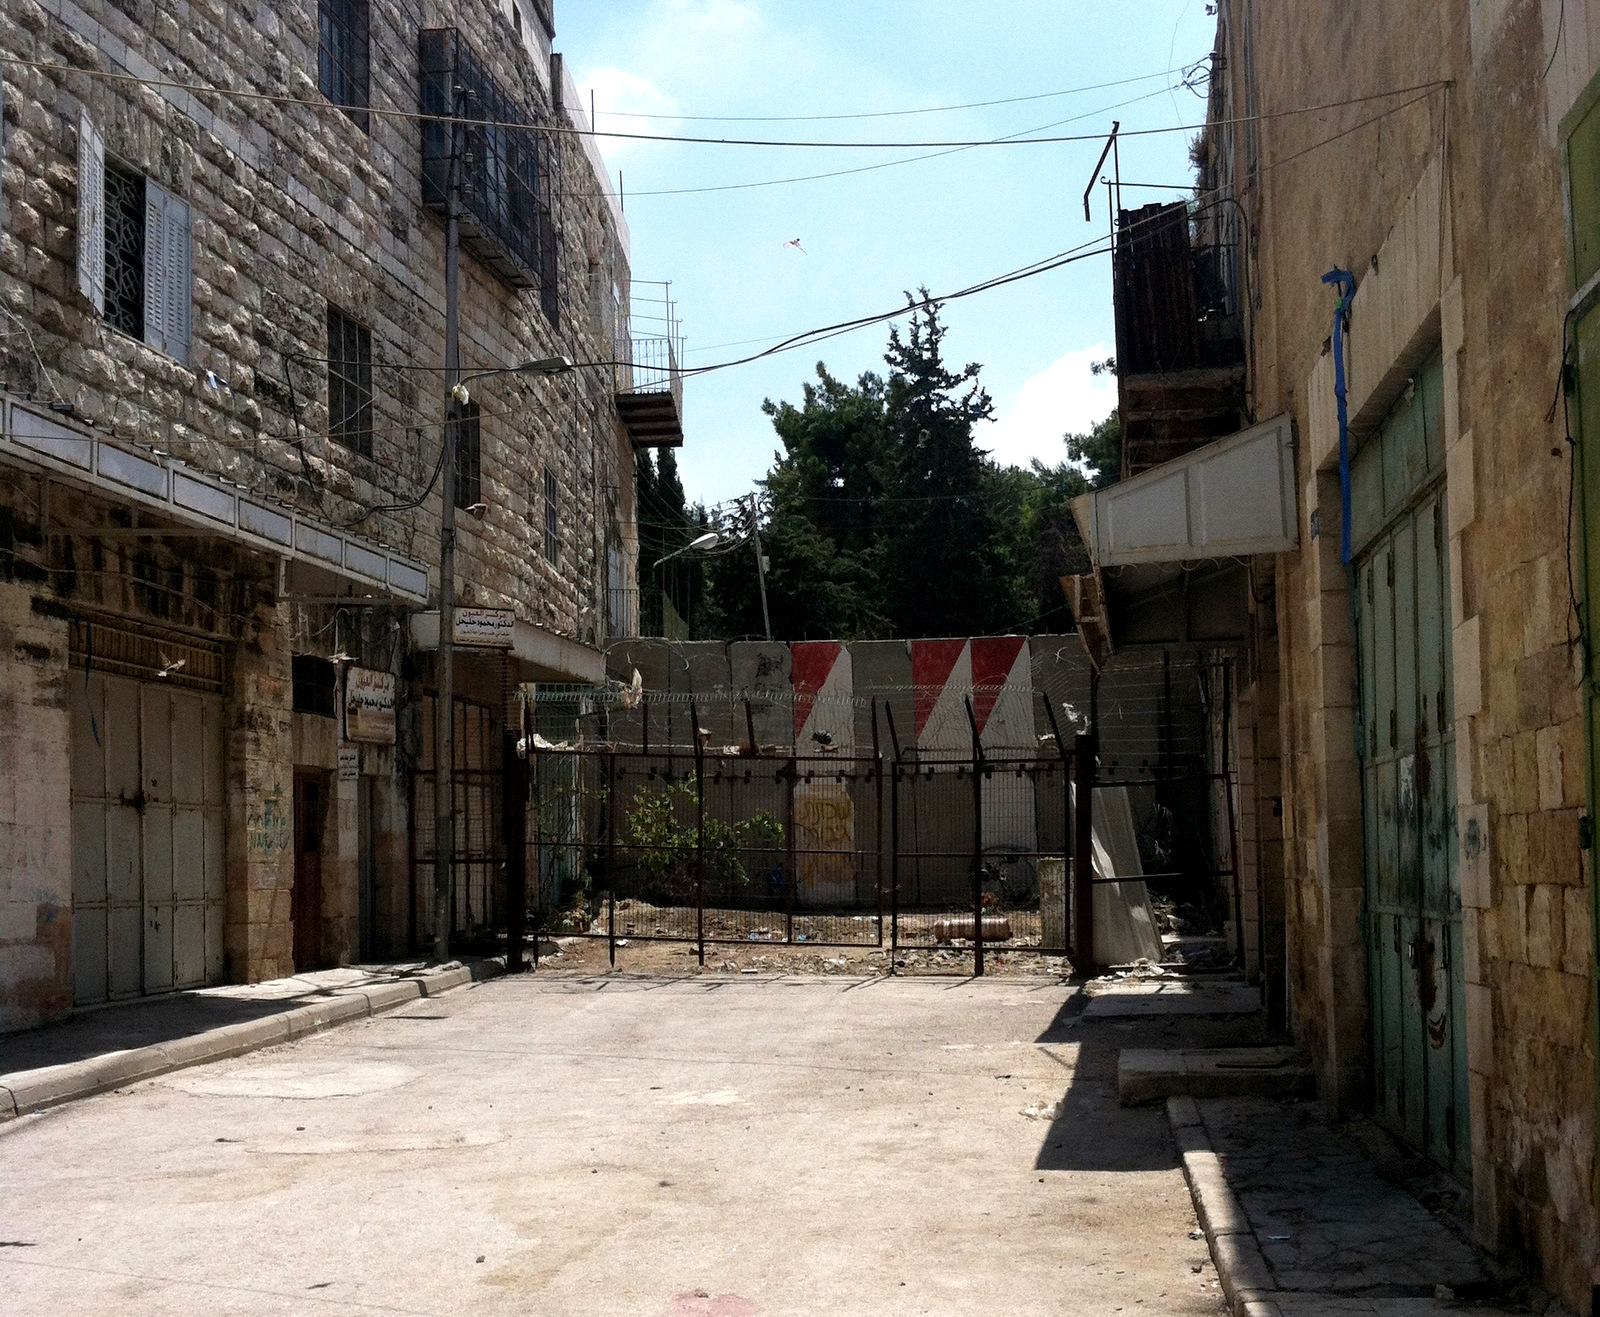 Un barrio cerca de la mezquita Ibrahimi en Hebrón. El lado ancho de la calle es para judíos y el lado angosto para musulmanes. (Foto: Miko Peled)